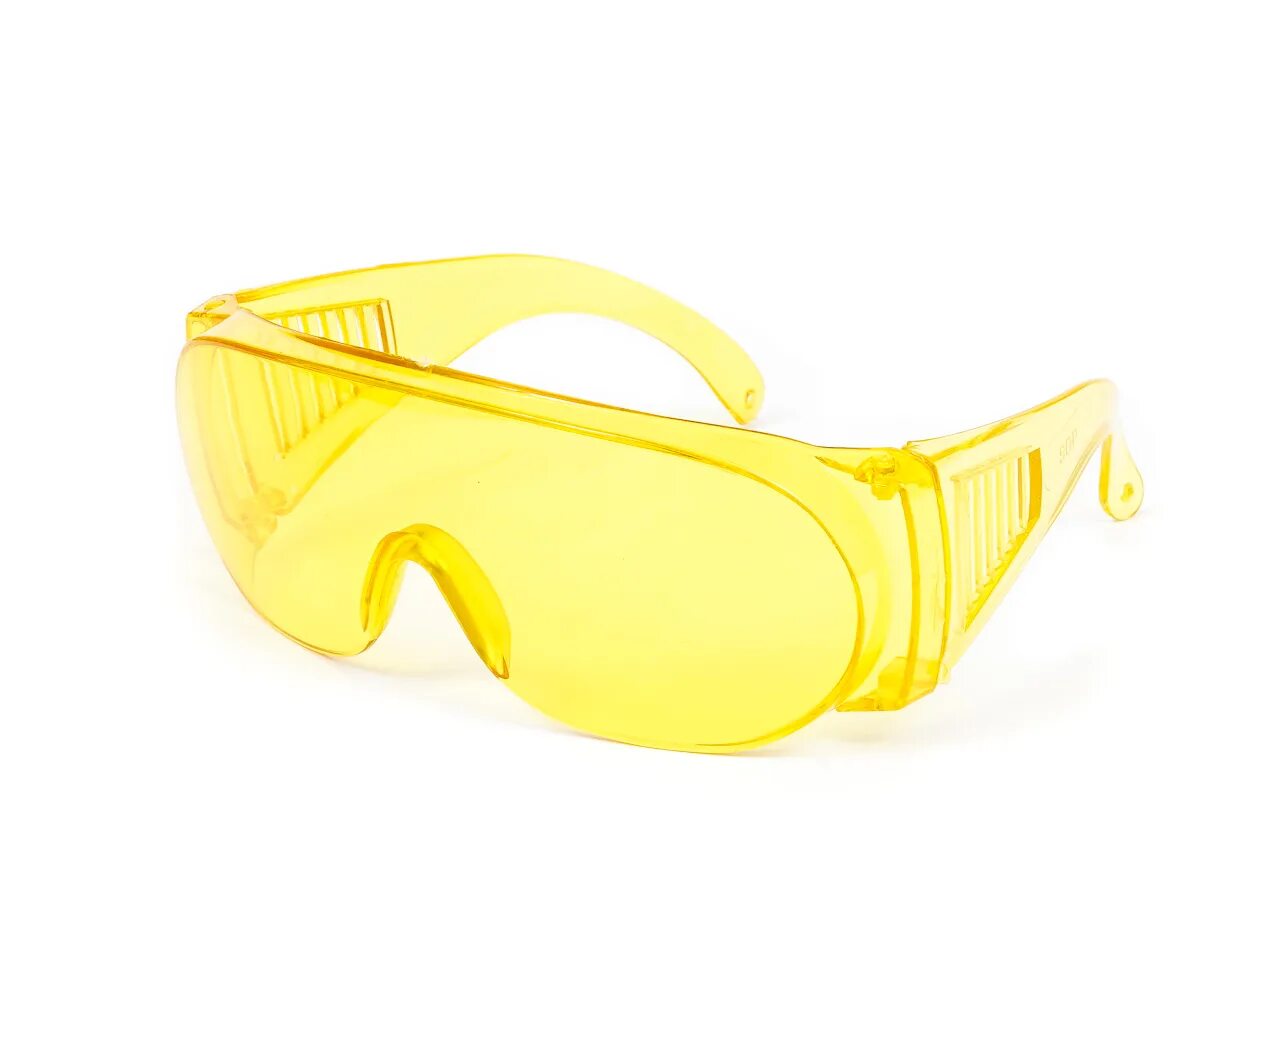 10 от 169. Очки защитные строительные. Строительные очки желтые. Очки рабочие защитные желтые. Строительные очки защитные желтые линзы.